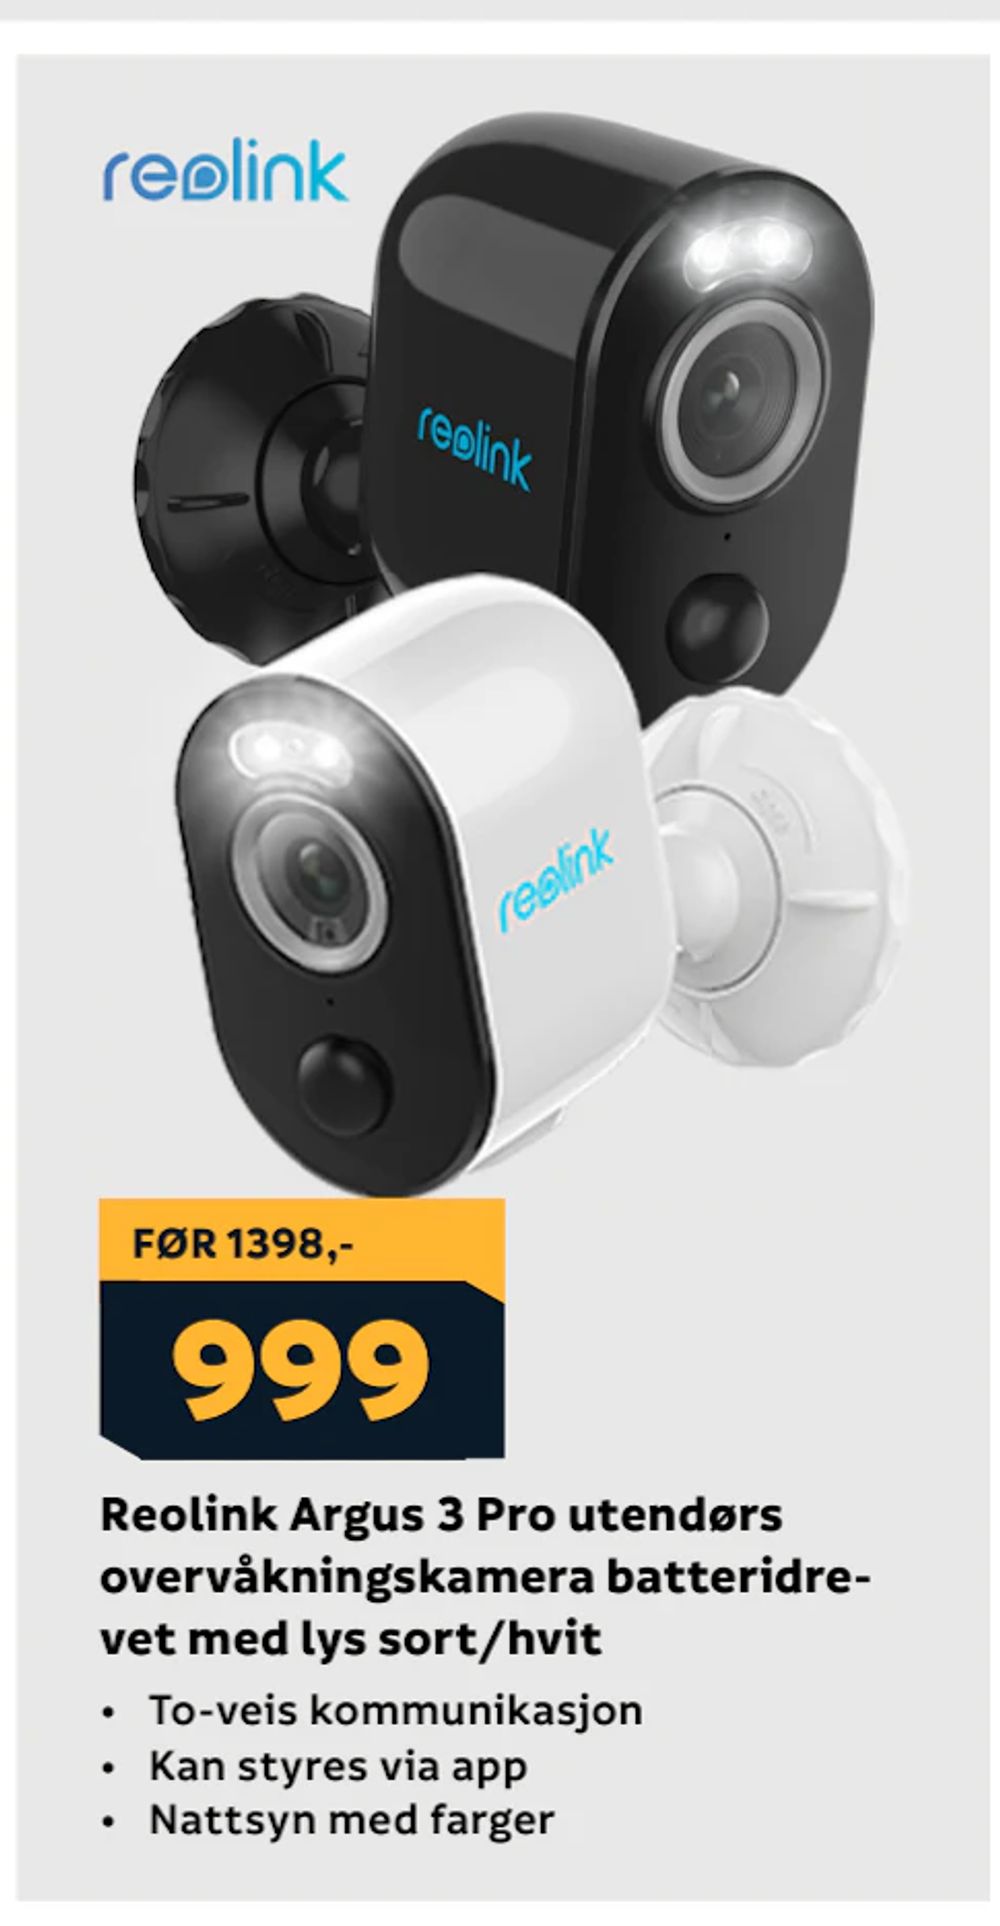 Tilbud på Reolink Argus 3 Pro utendørs overvåkningskamera batteridrevet med lys sort/hvit fra Megaflis til 999 kr